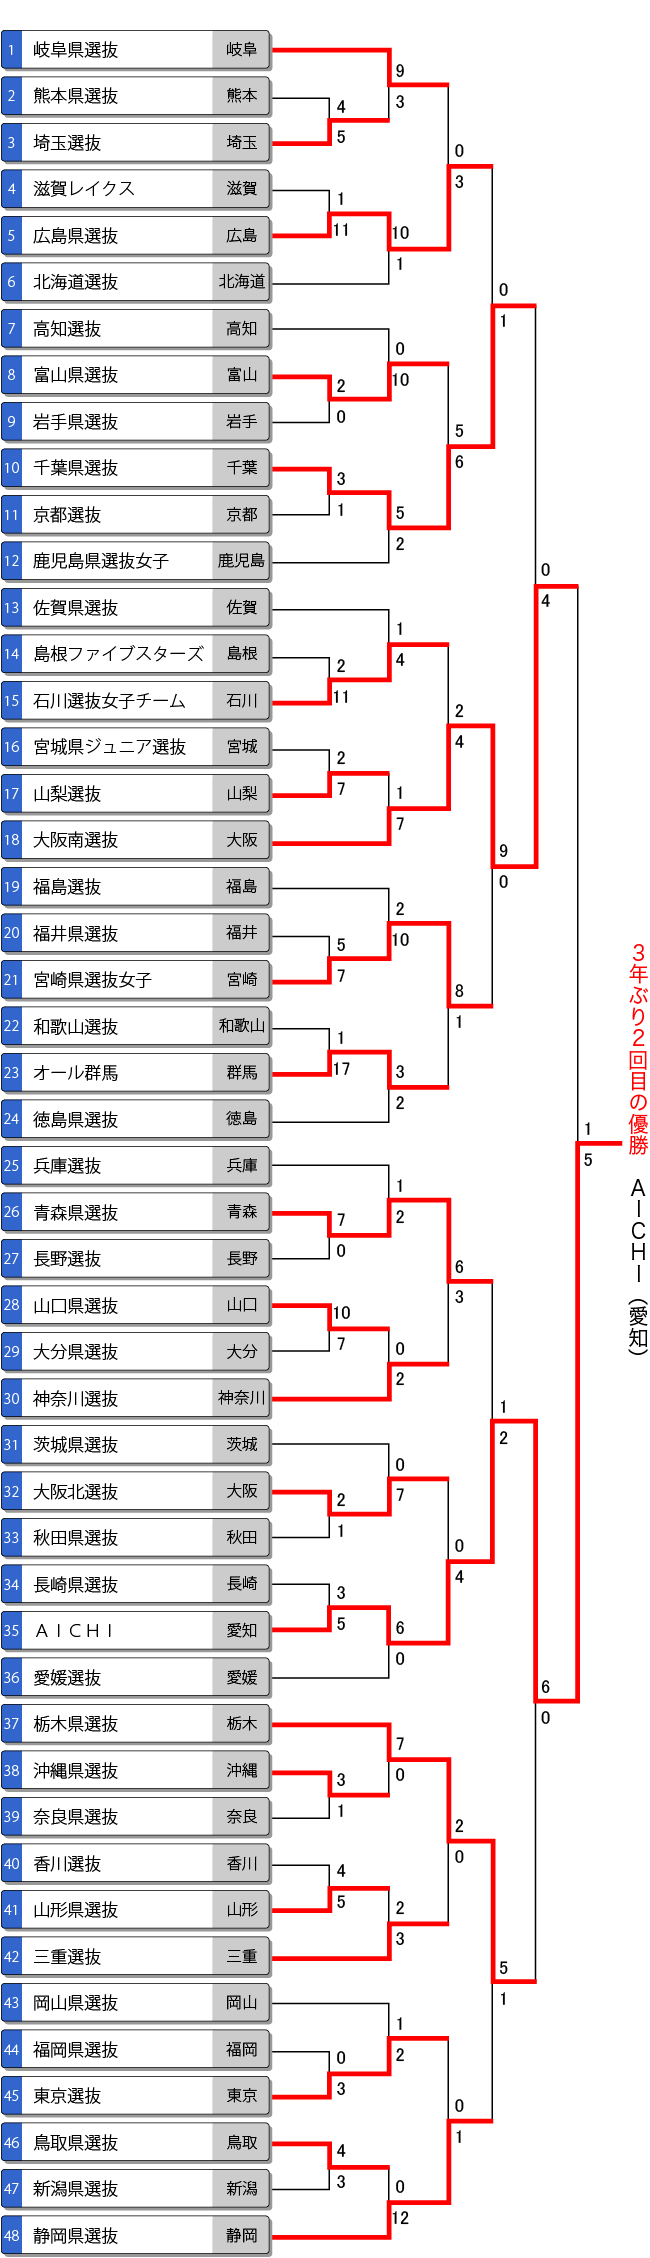 第14回都道府県対抗全日本中学生女子大会トーナメント表・結果